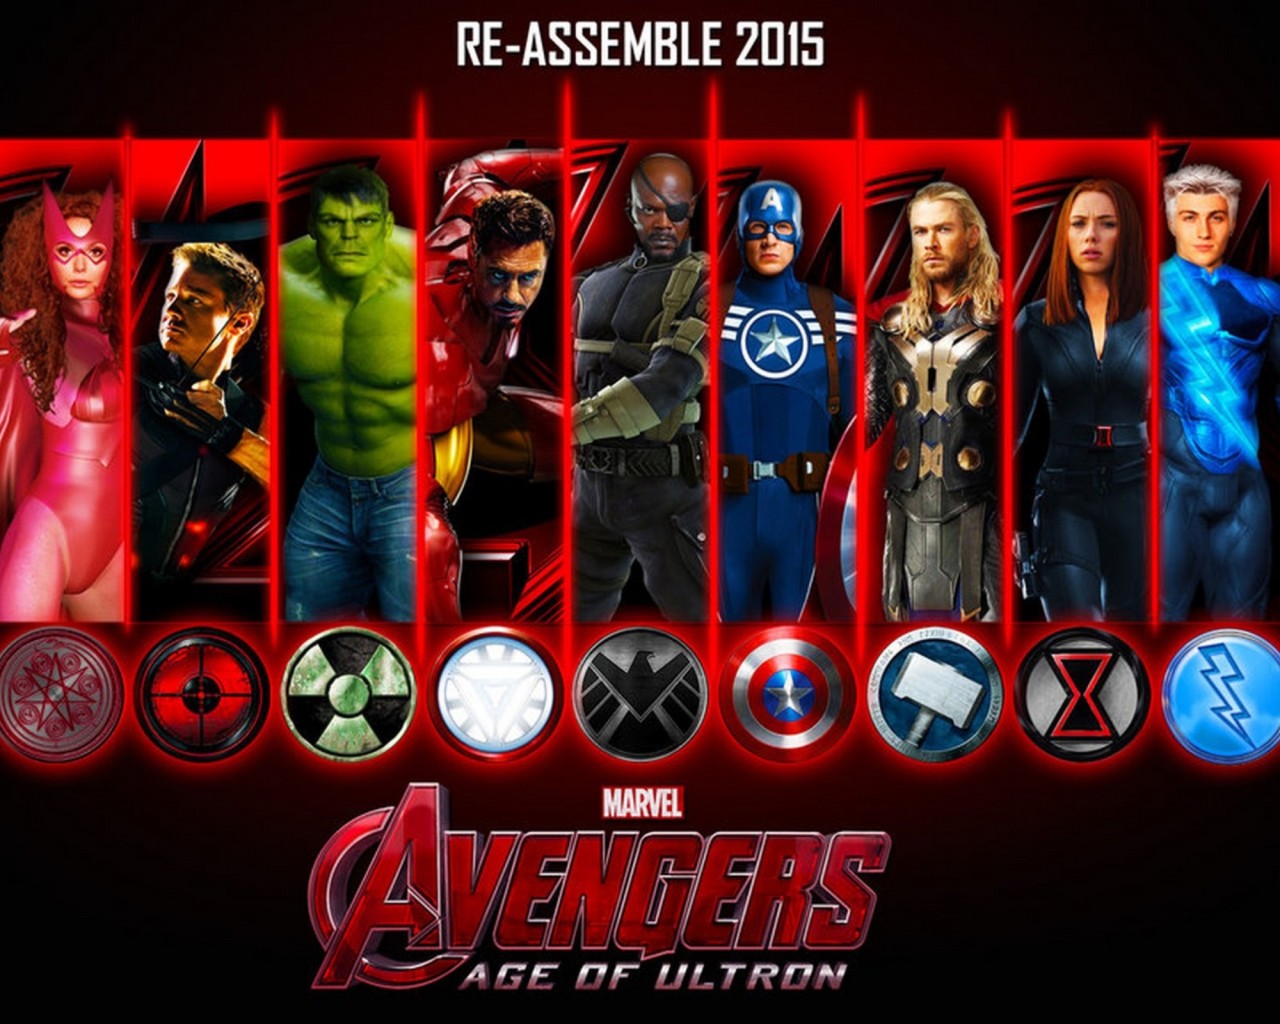 Avengers Age of Ultron 2015 Wallpaper HDwallpaperUP